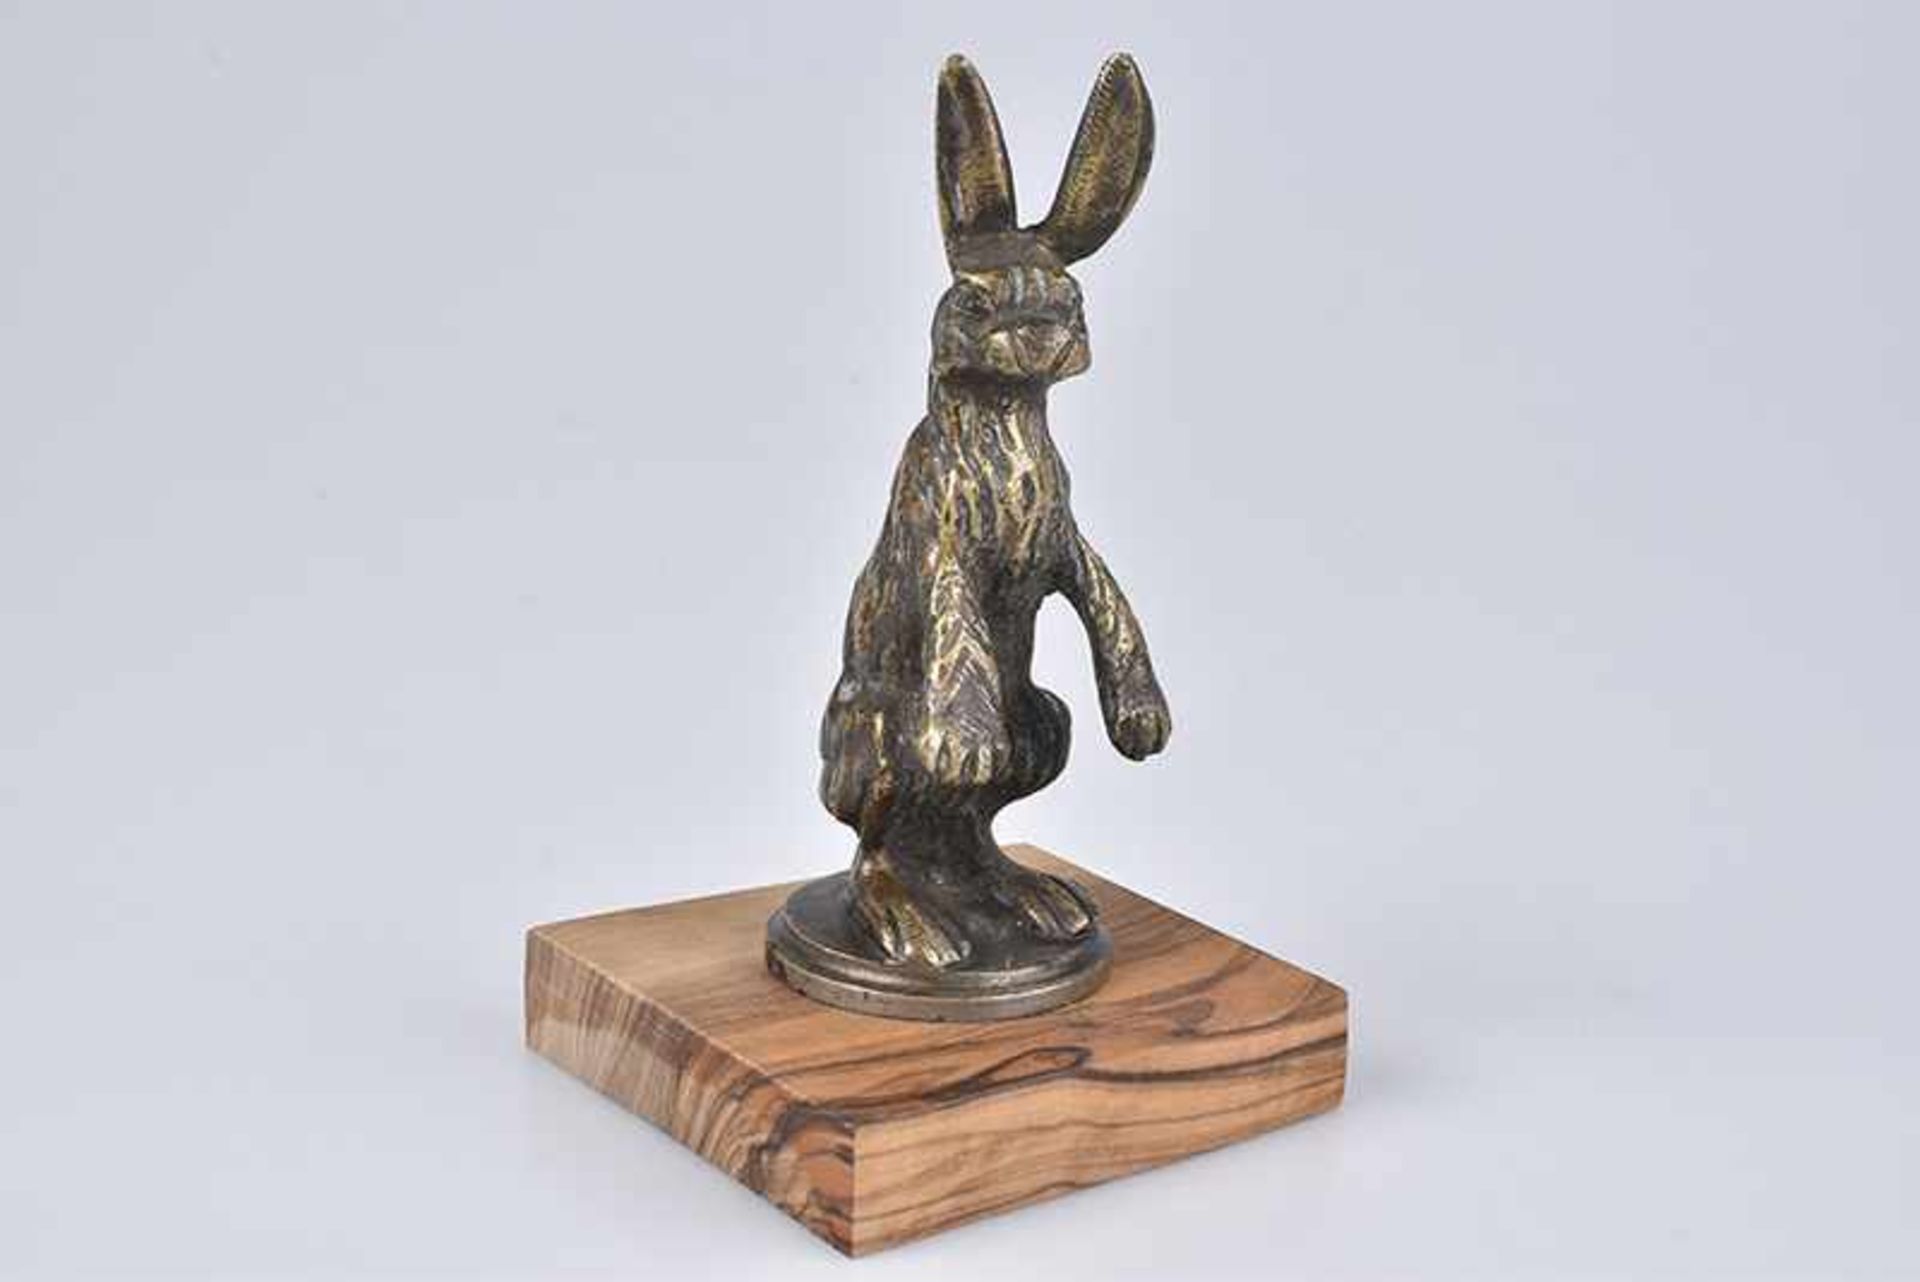 Emblem/ Kühlerfigur/ Car Mascot Hase, Bronze, ca. 12 cm, auf Holzsockel montiert, leicht bestoßen, Z